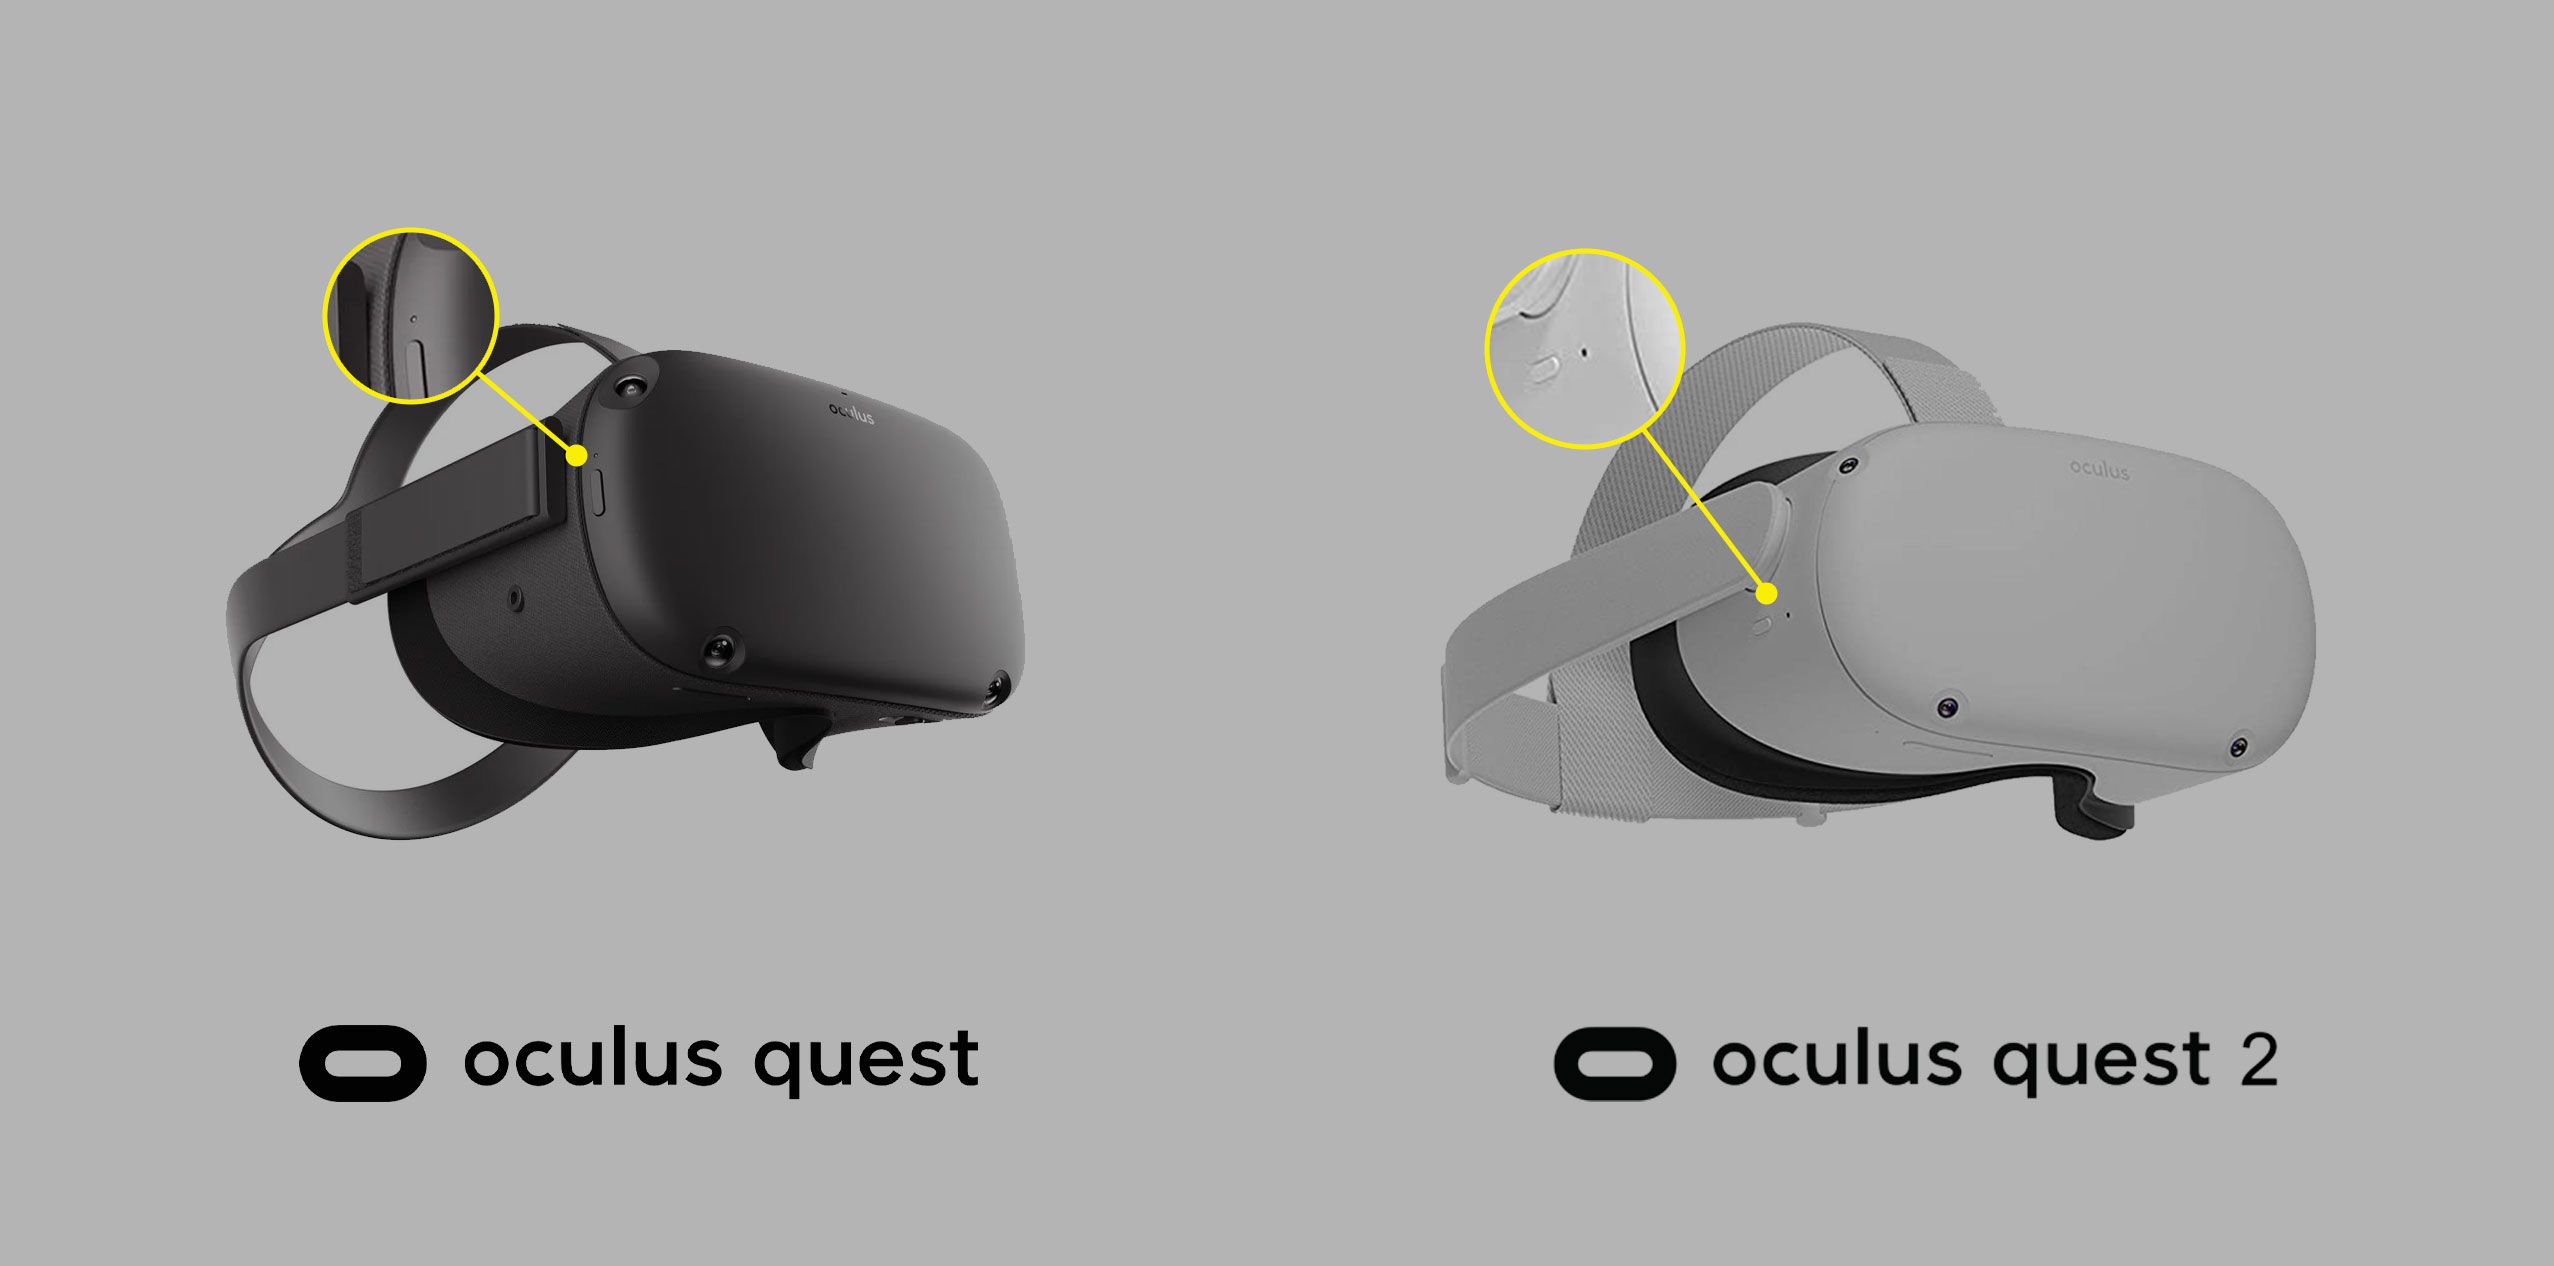 Indikátor se rozsvítí na náhlavních soupravách Oculus Quest a Quest 2 VR